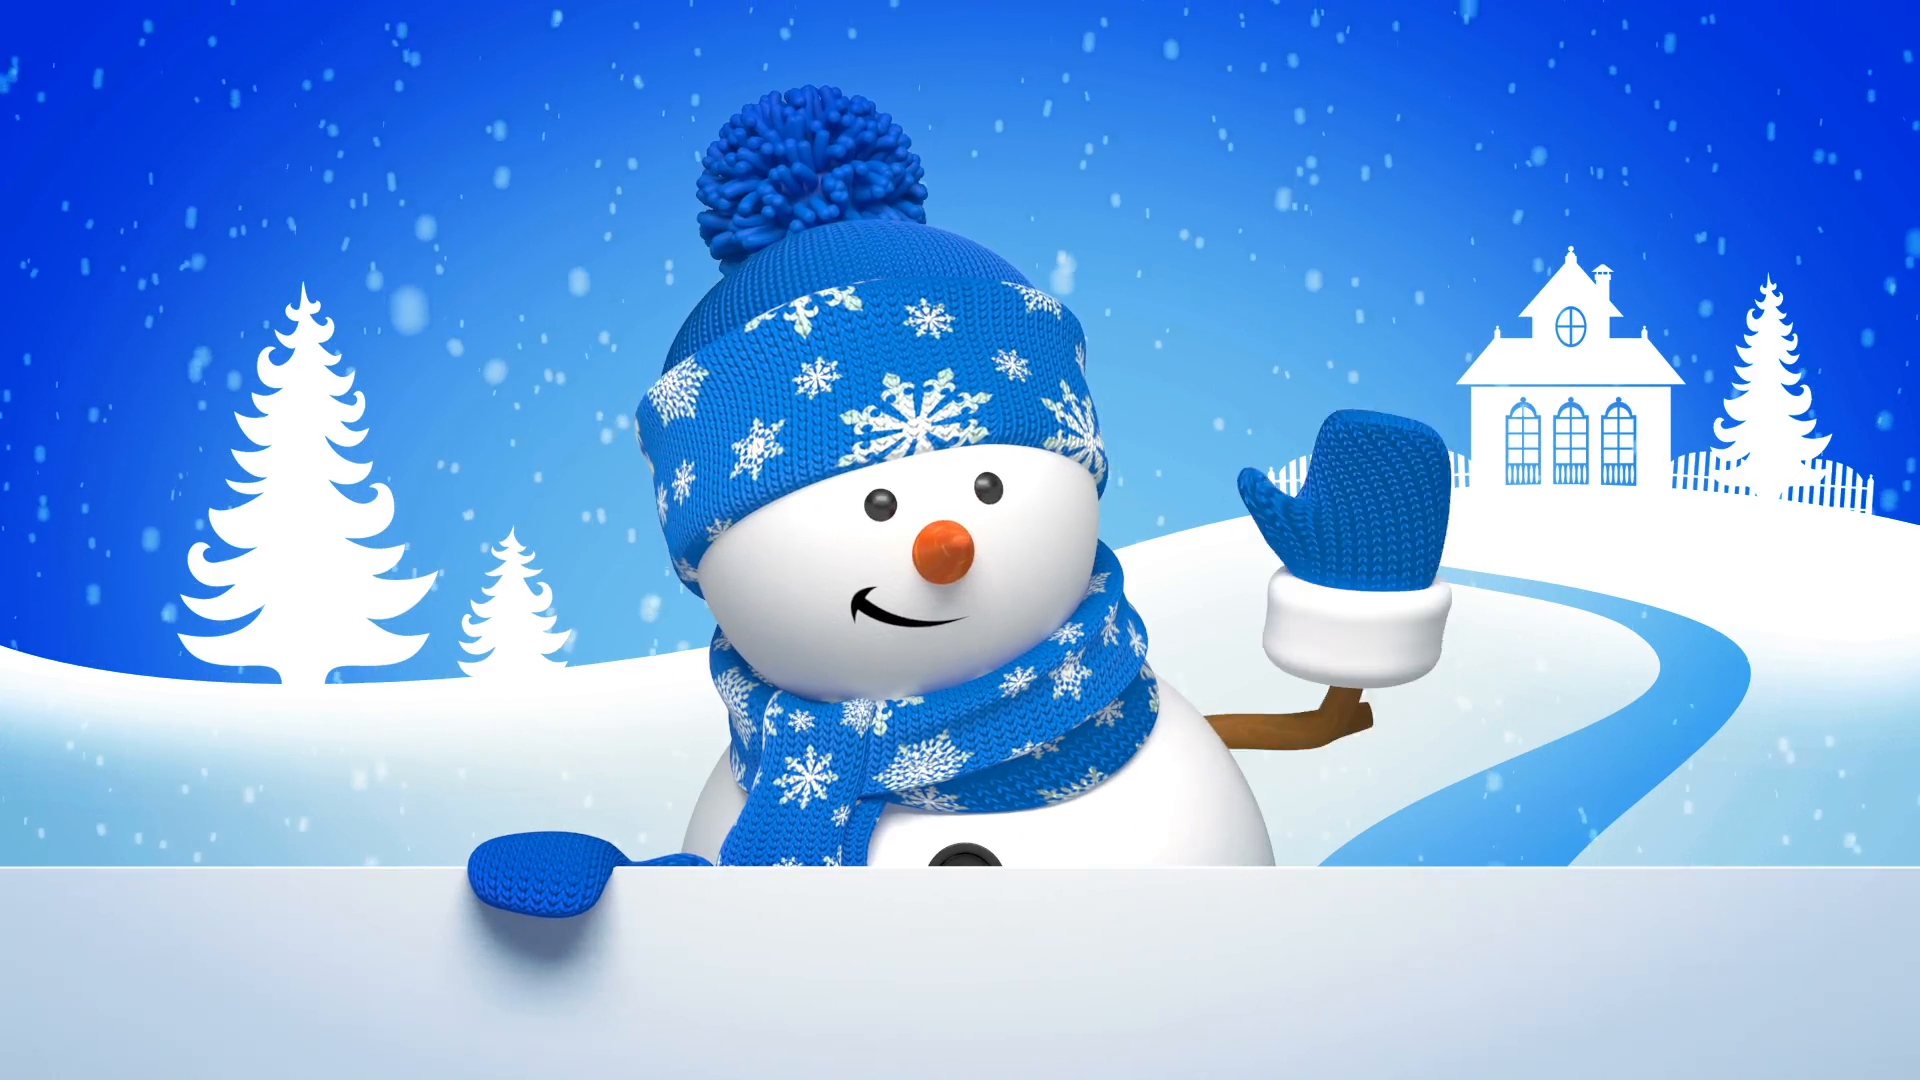 snowman wallpaper hd,snowman,snow,winter,sky,christmas eve